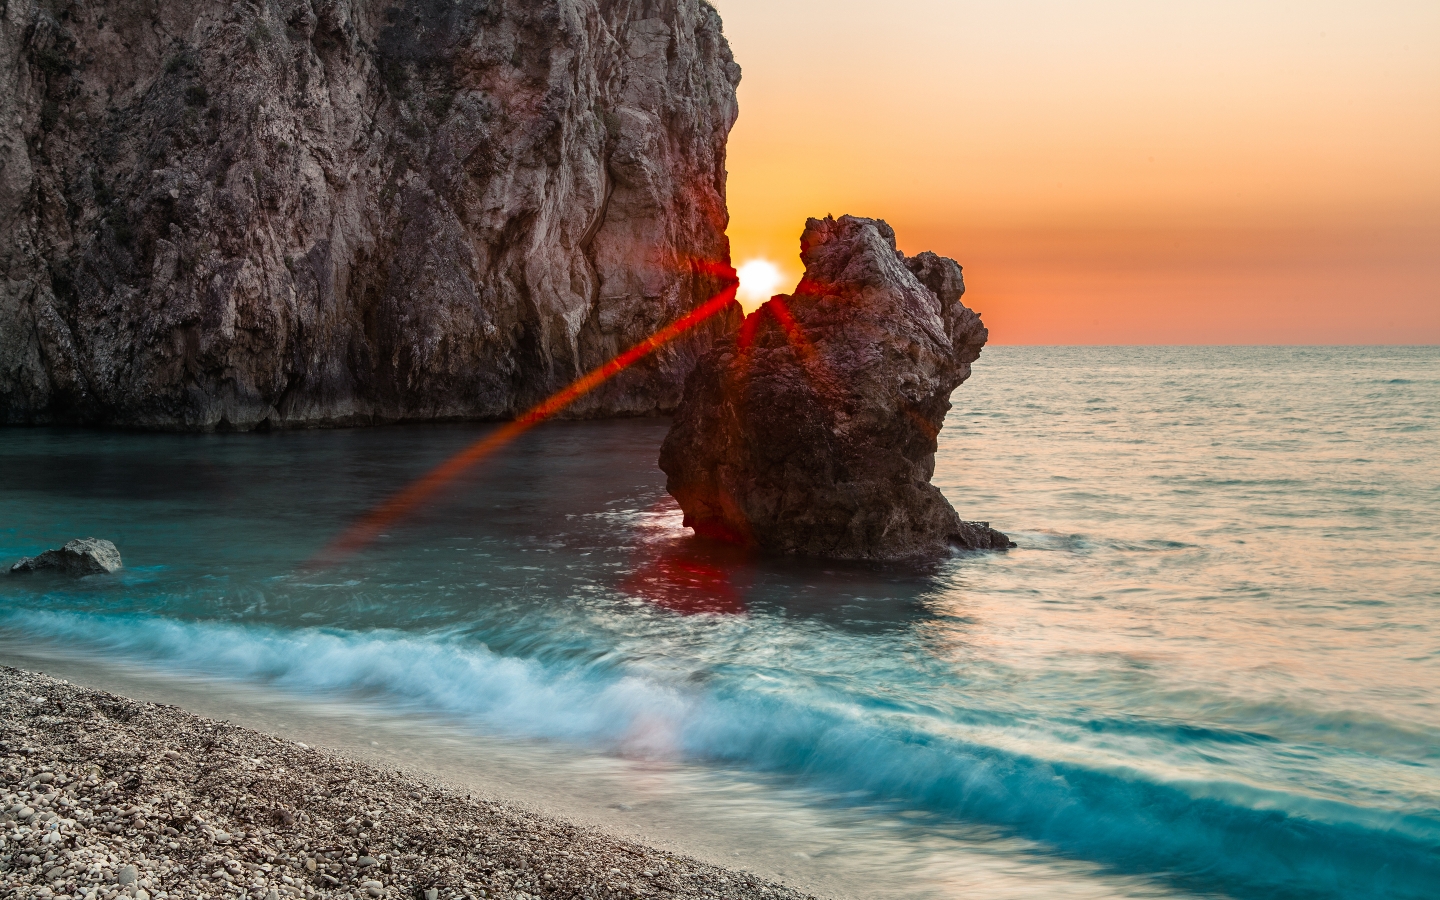 Sunset Between Rocks for 1440 x 900 widescreen resolution